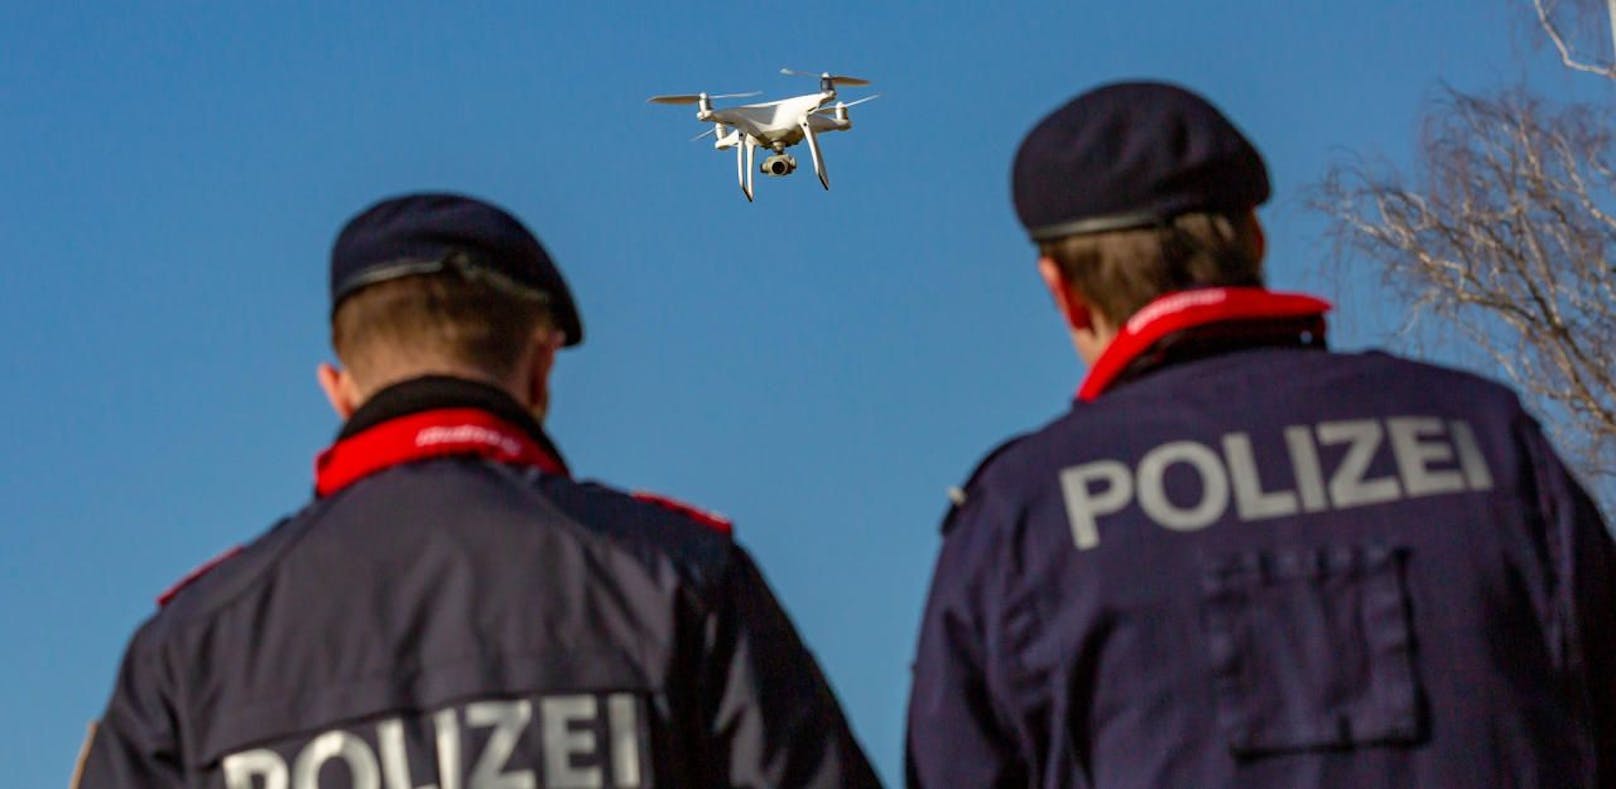 Mit Drohnen suchte die Polizei auf einer Baustelle illegal beschäftigte Arbeiter.